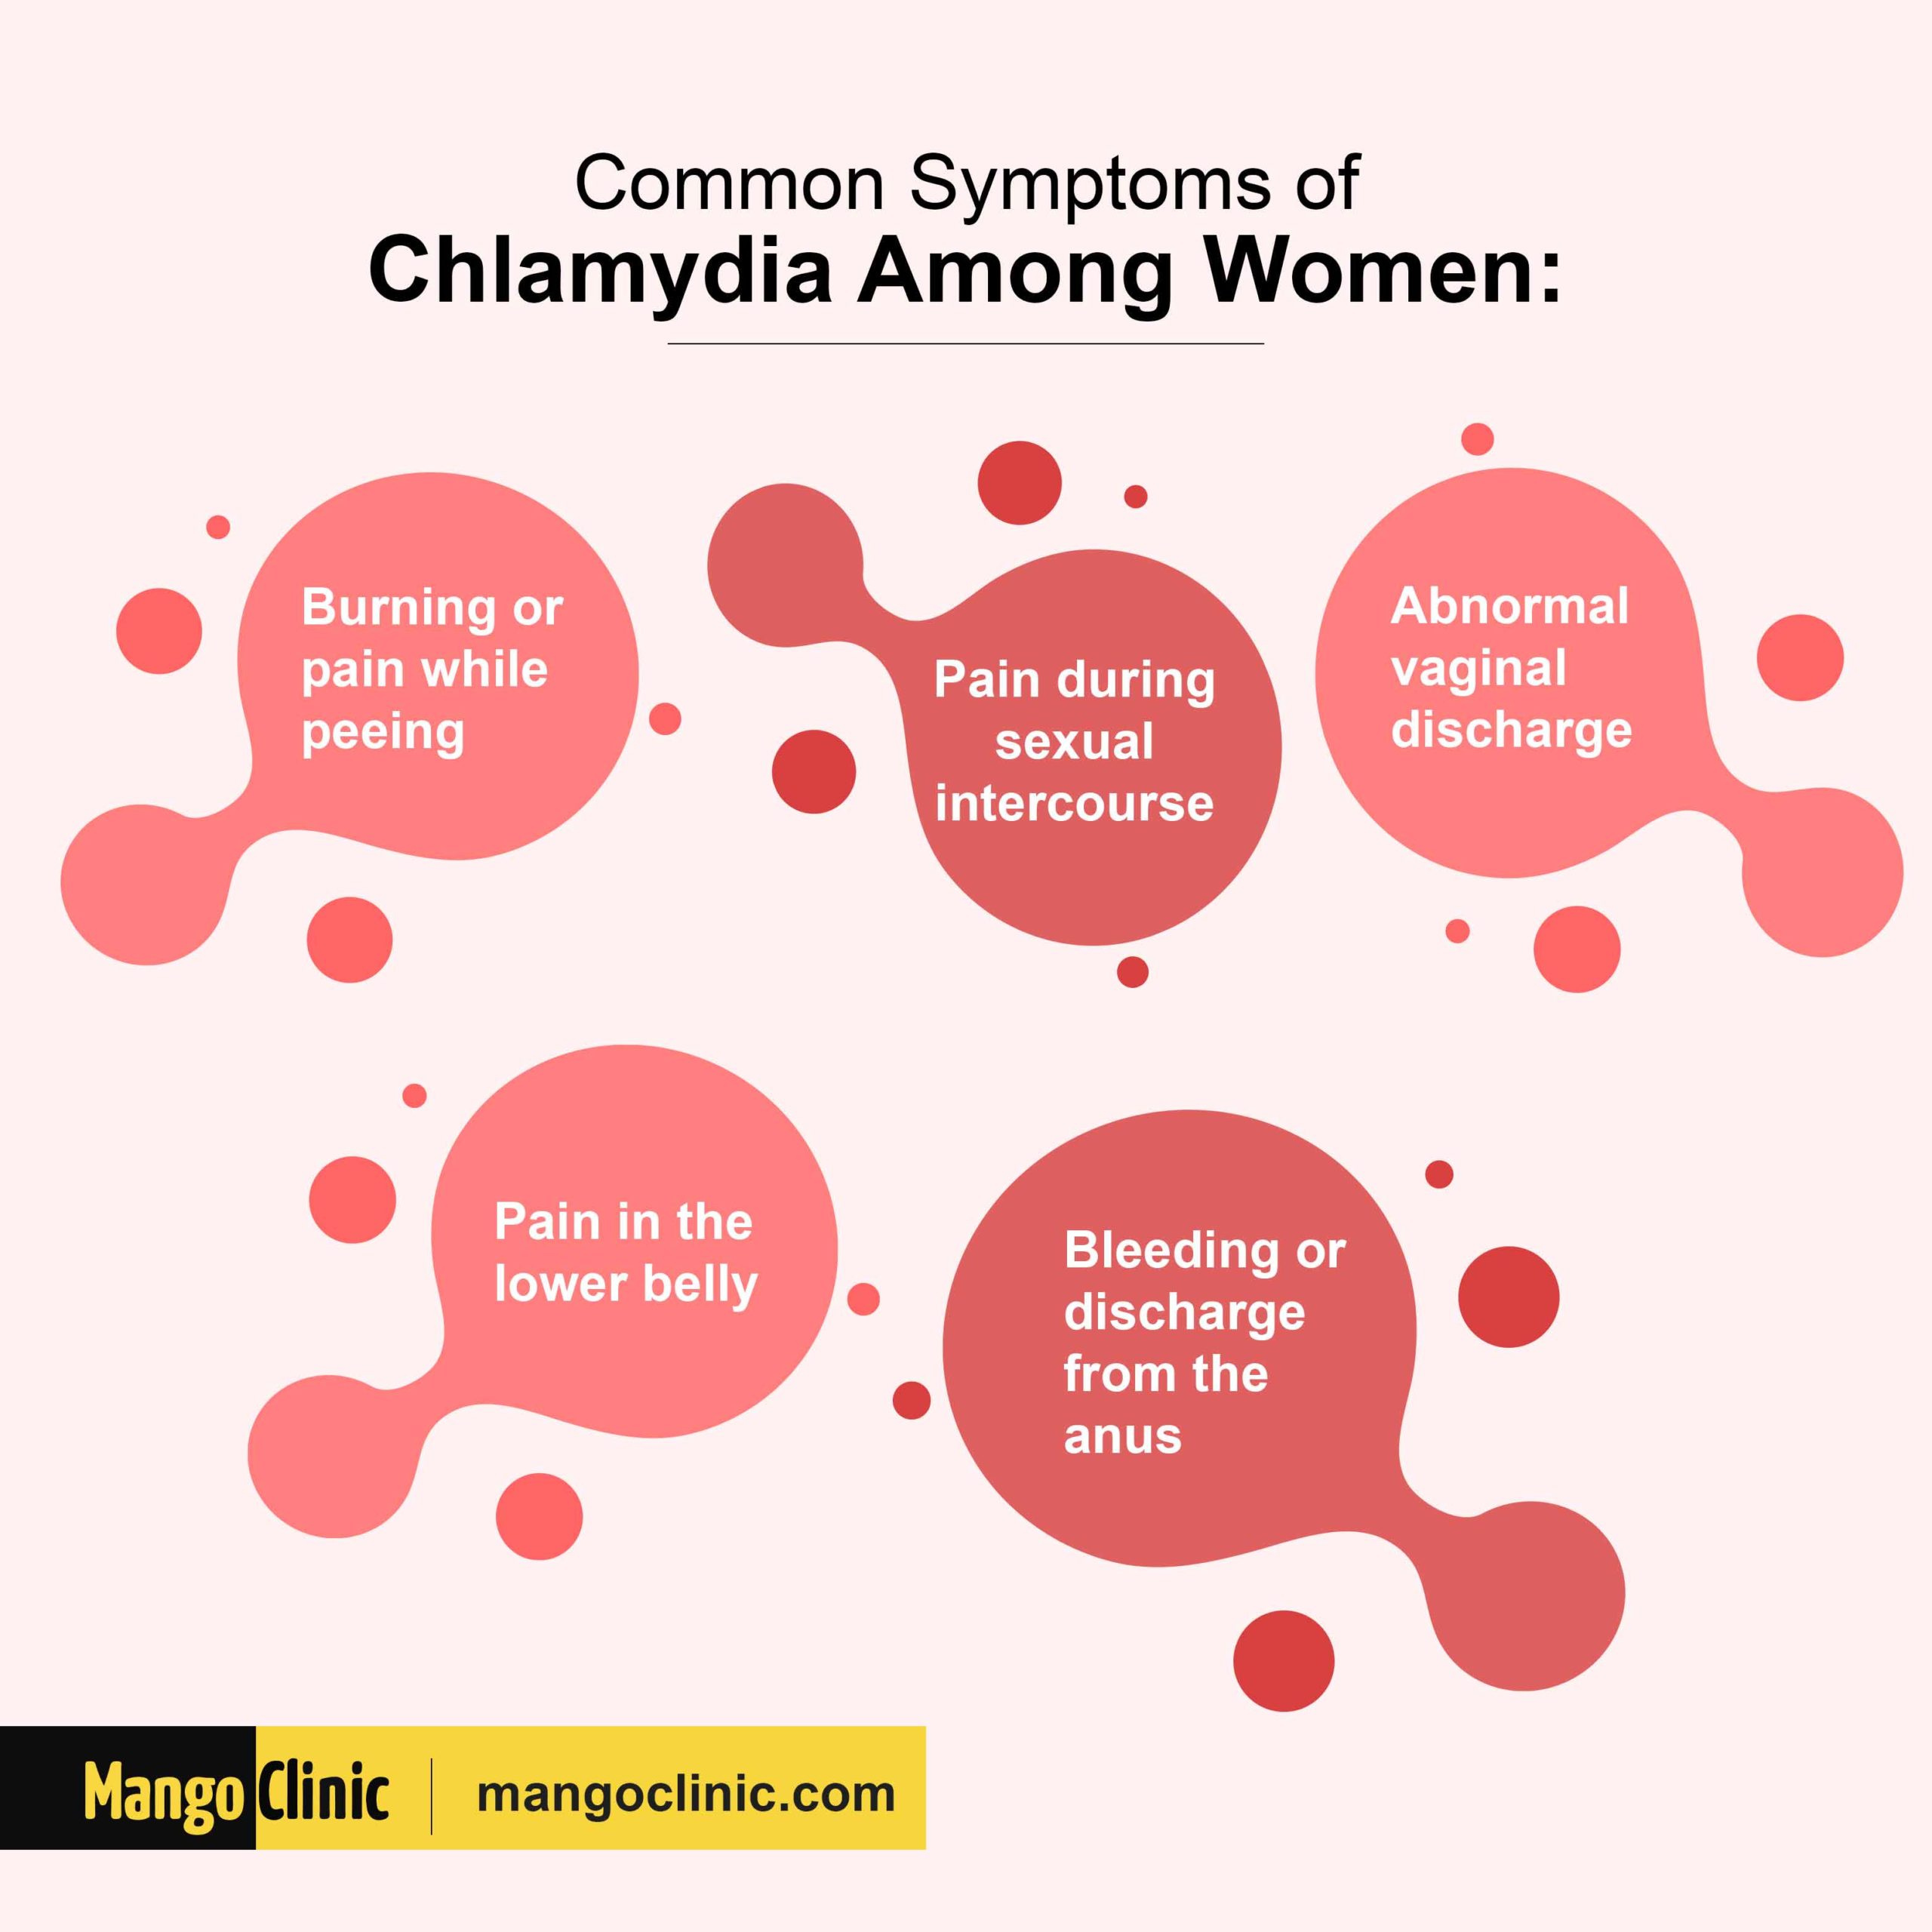 Chlamydia symptoms among women